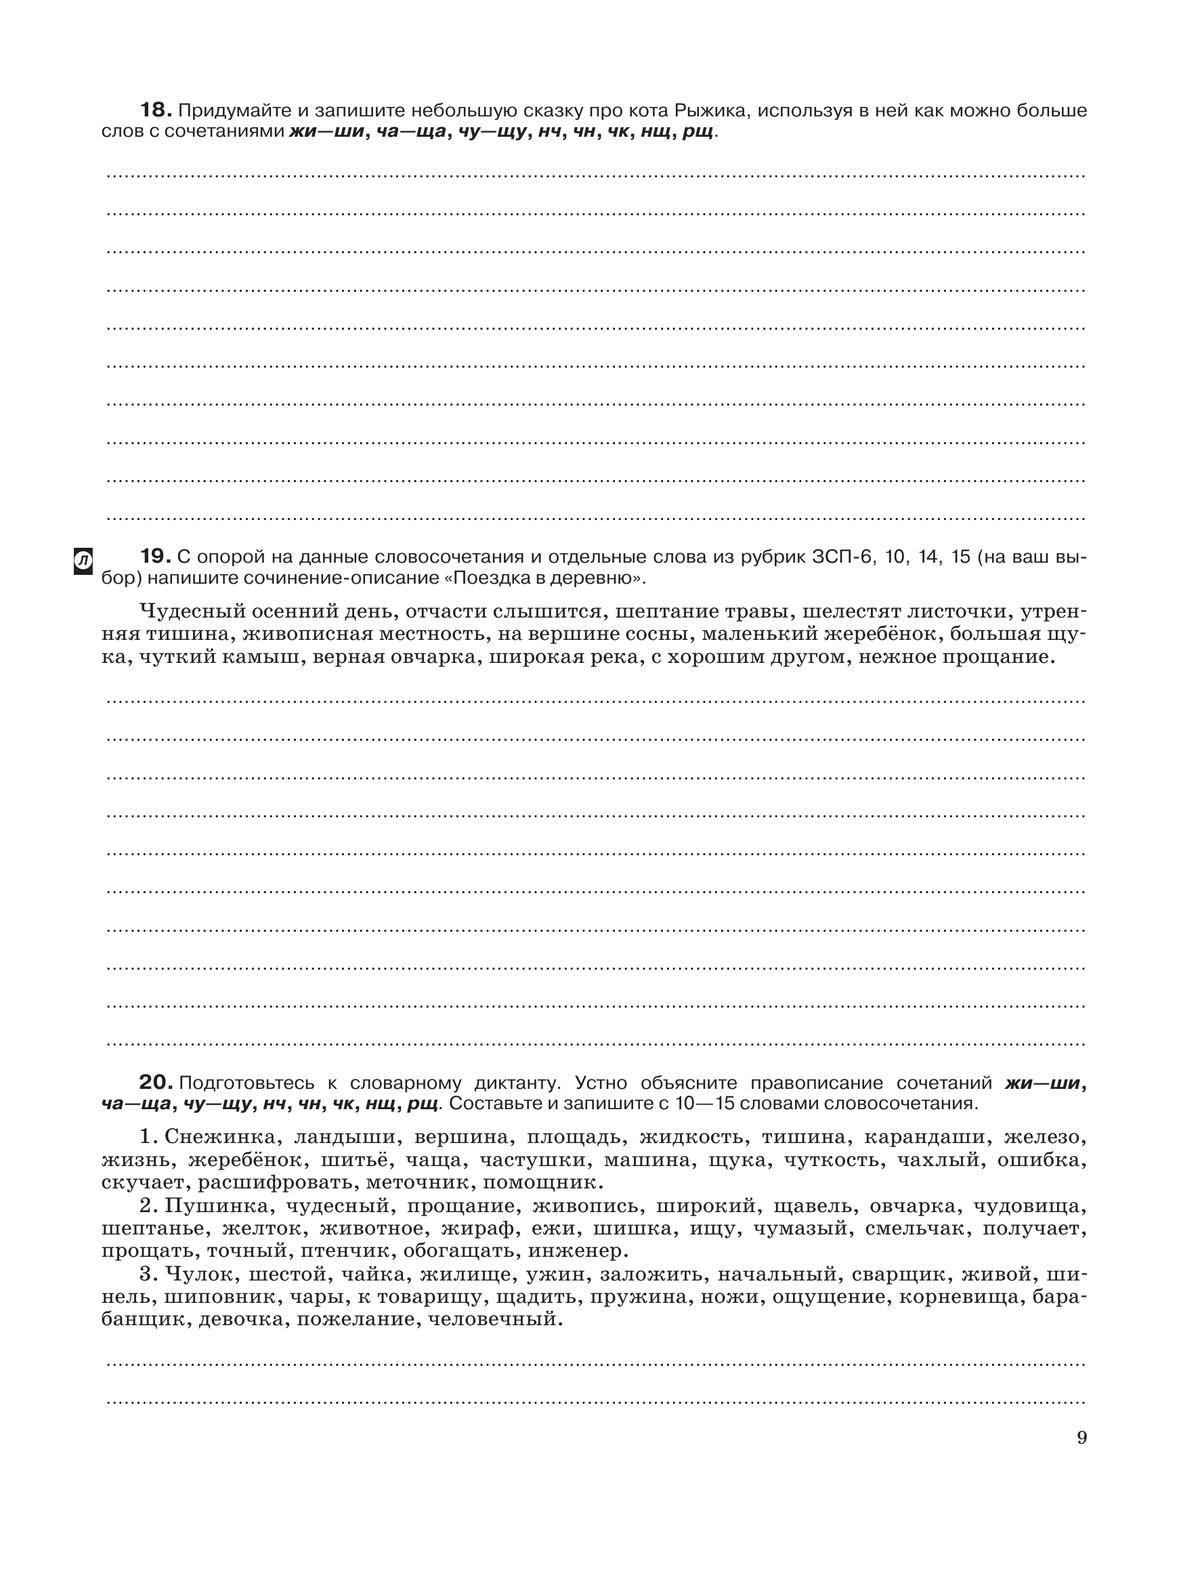 Русский язык. Рабочая тетрадь с тестовыми заданиями ЕГЭ. 5 класс 10